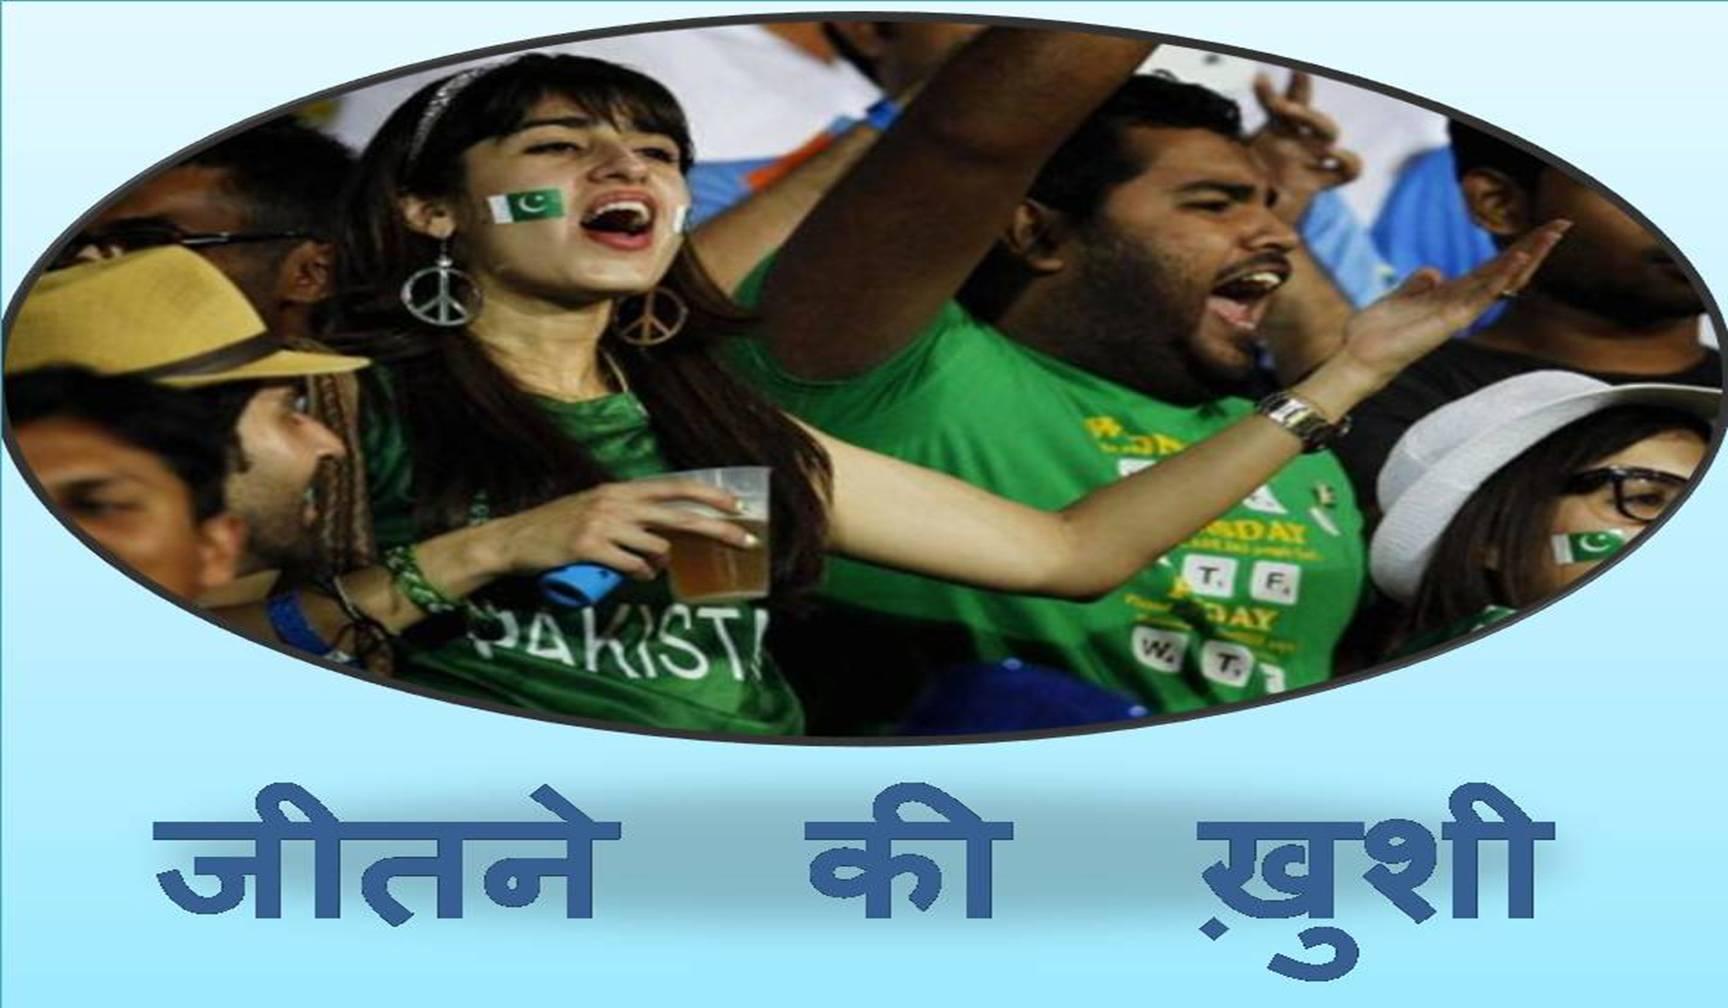 पाकिस्तान की जीत का जश्न मनाते-मनाते खोया दिमागी संतुलन, इतना हंसे कि दो दिन हो गए हंसते-हंसते!